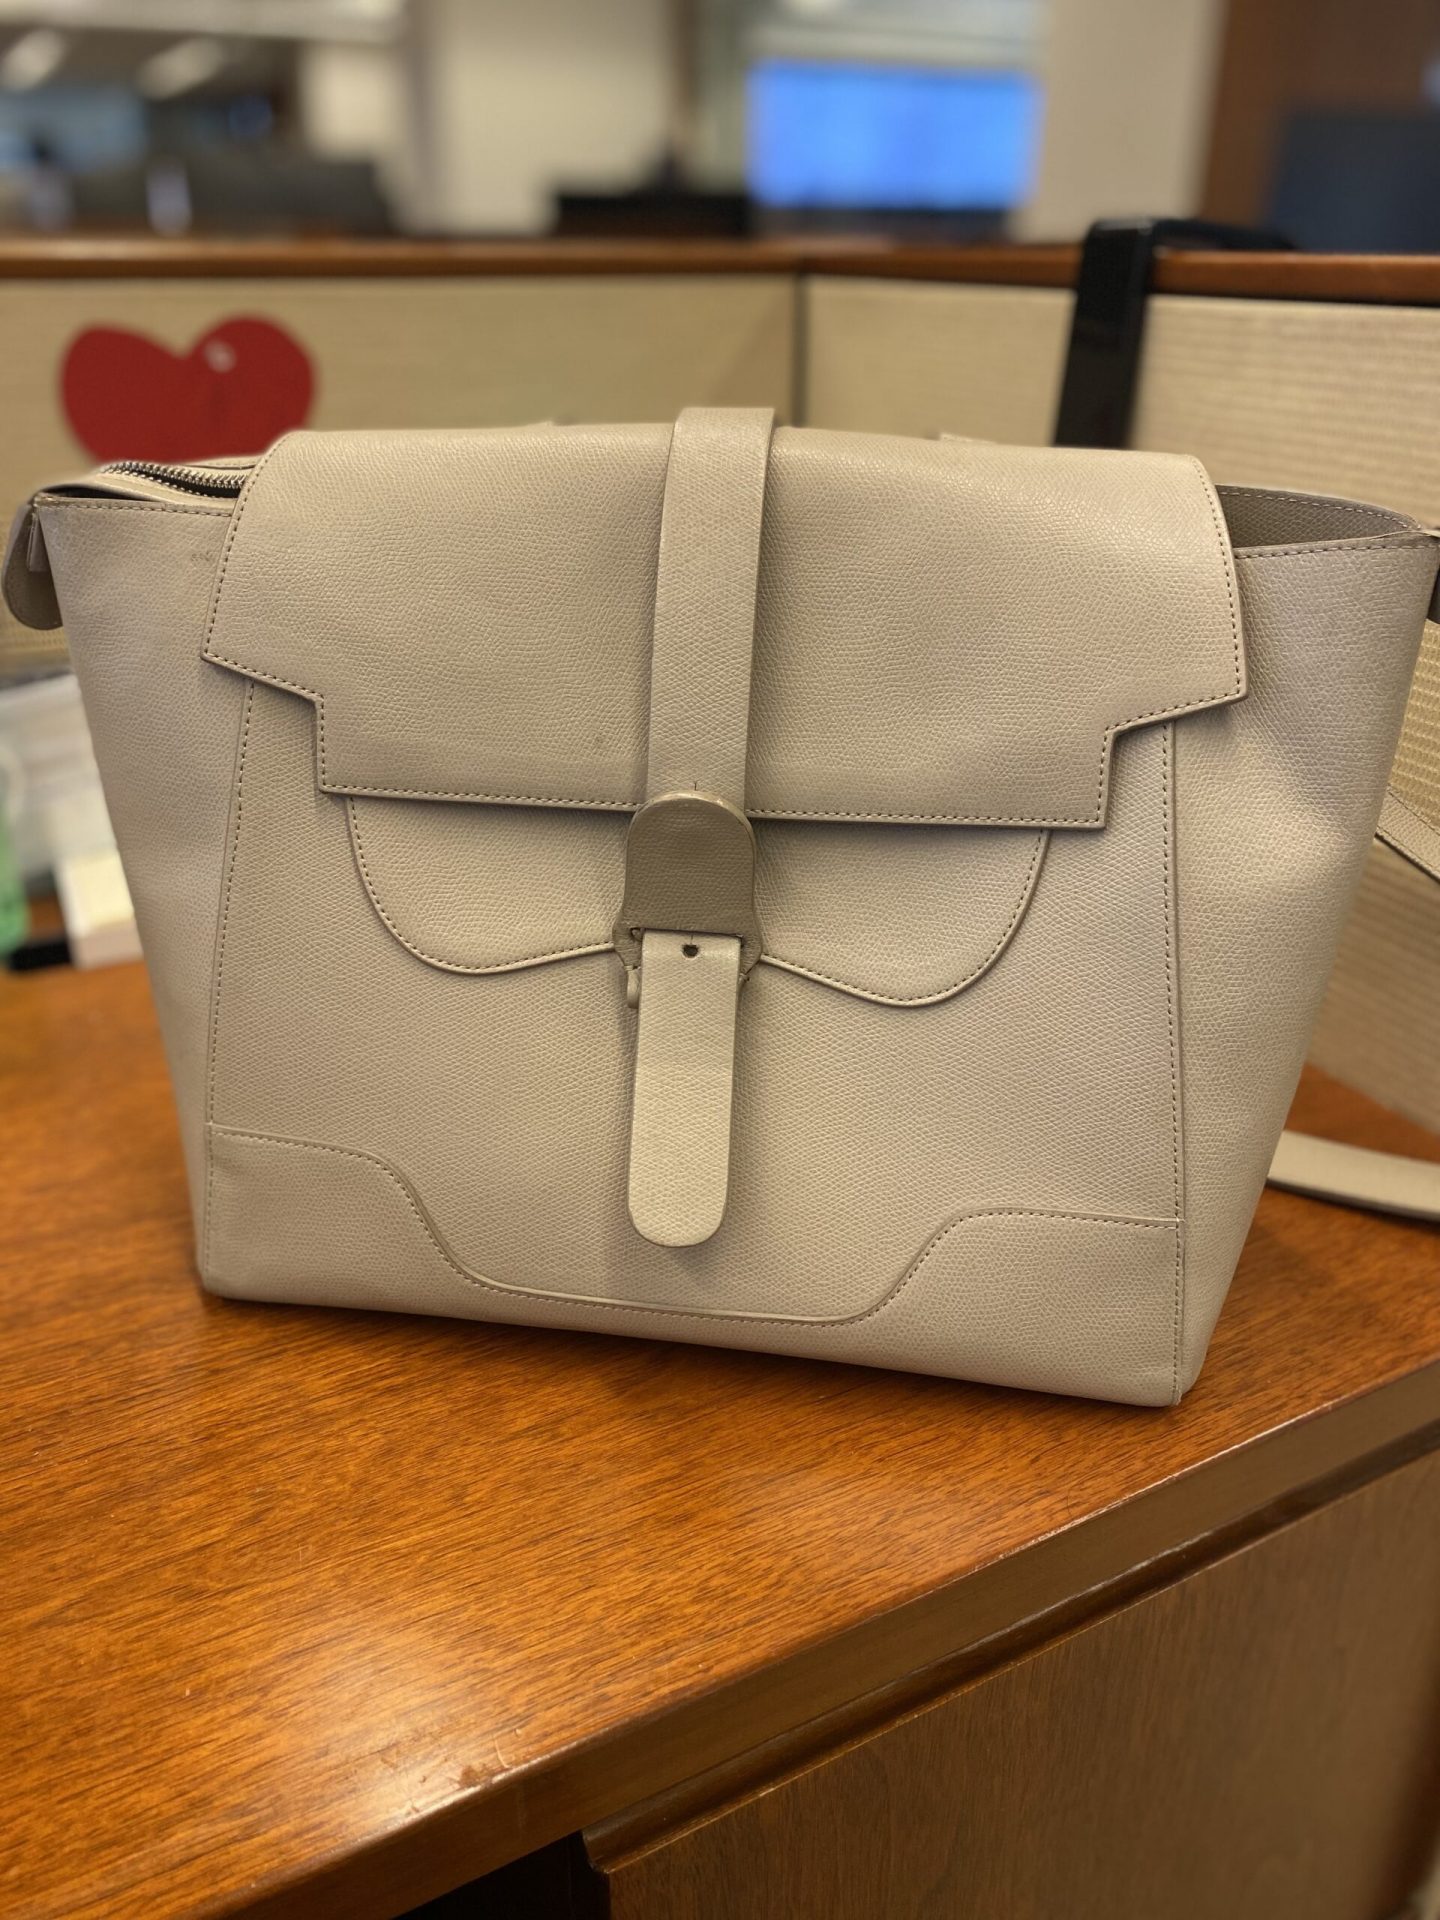 Senreve Mini, Midi, and Maestra Review | Chic handbags, Pretty bags, Luxury  bags